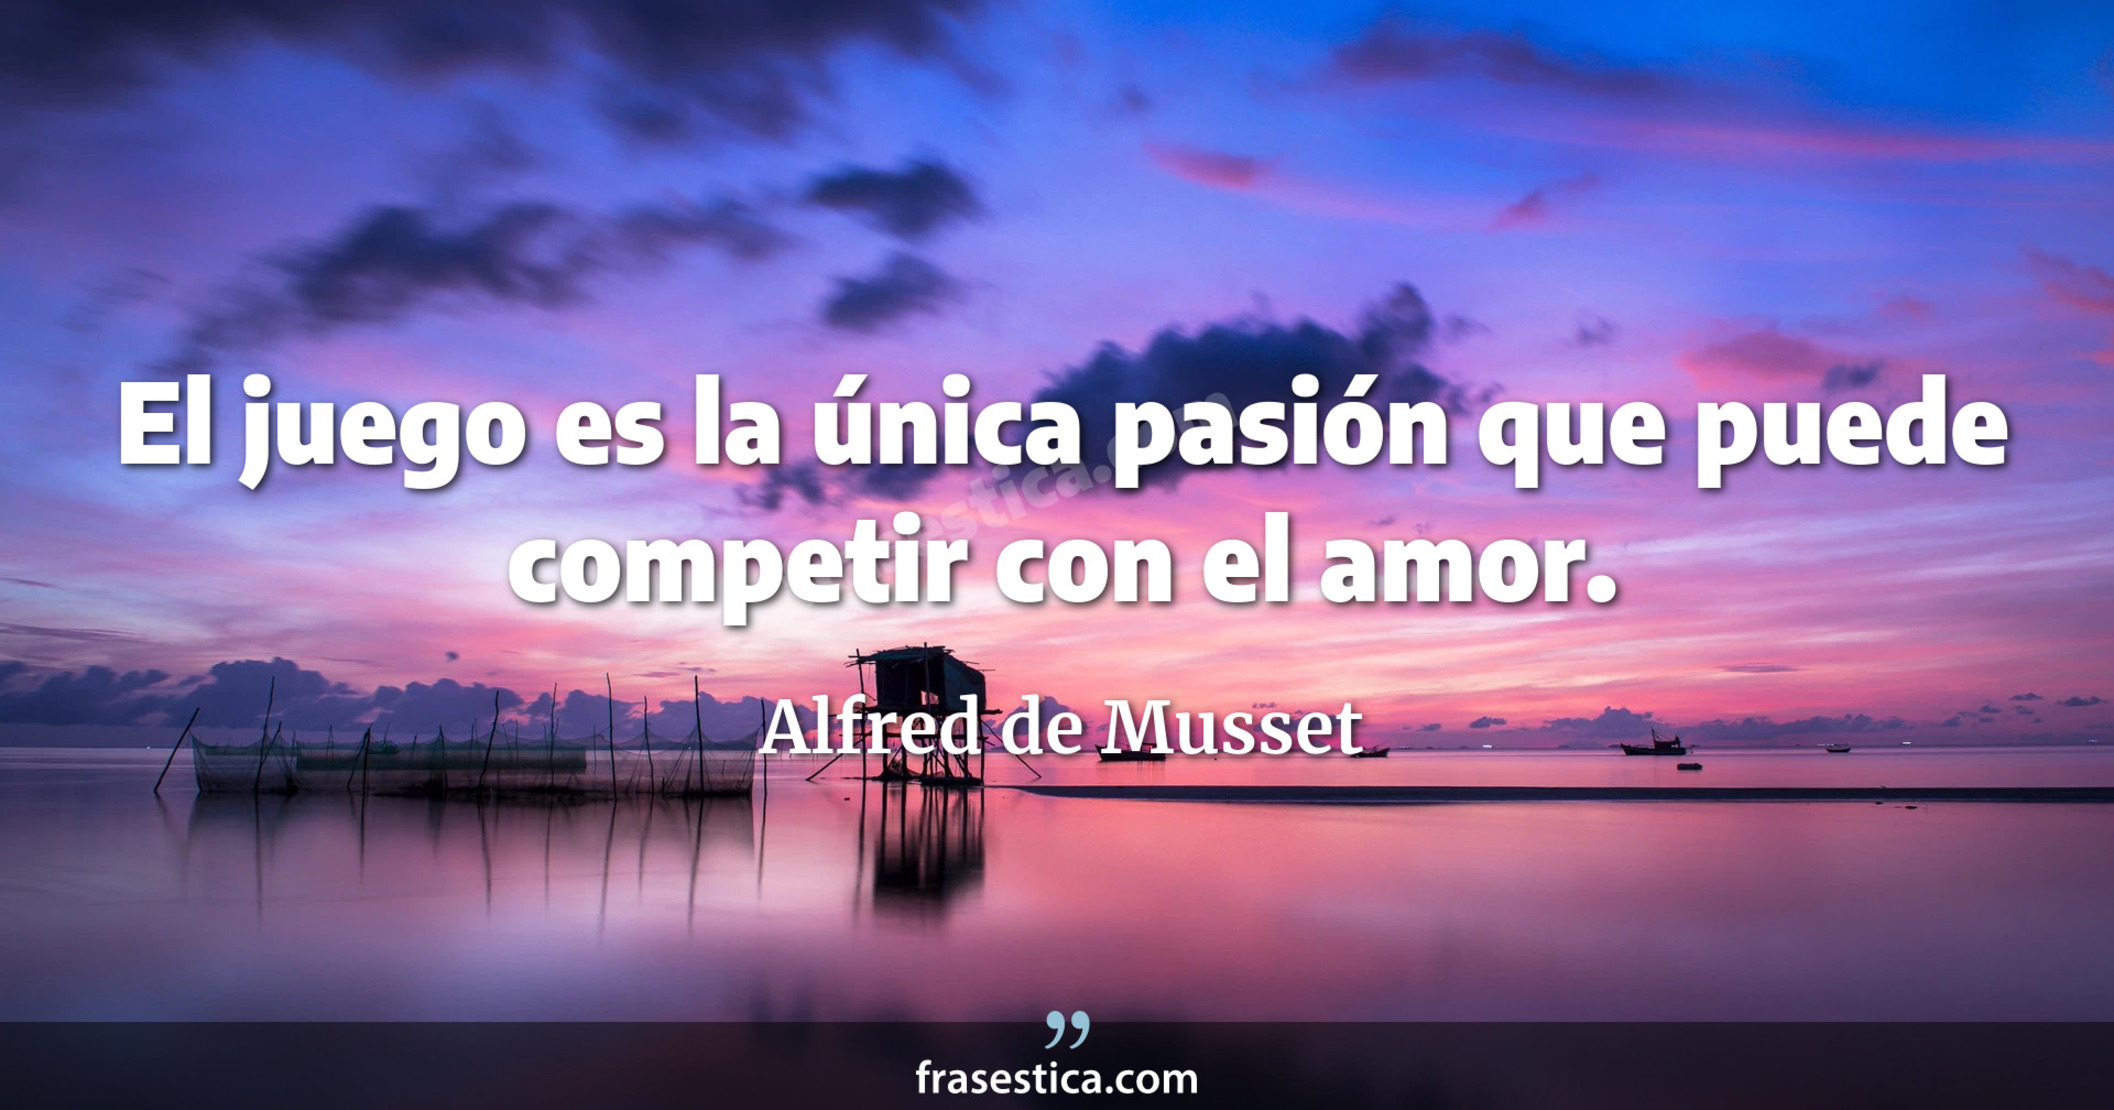 El juego es la única pasión que puede competir con el amor. - Alfred de Musset